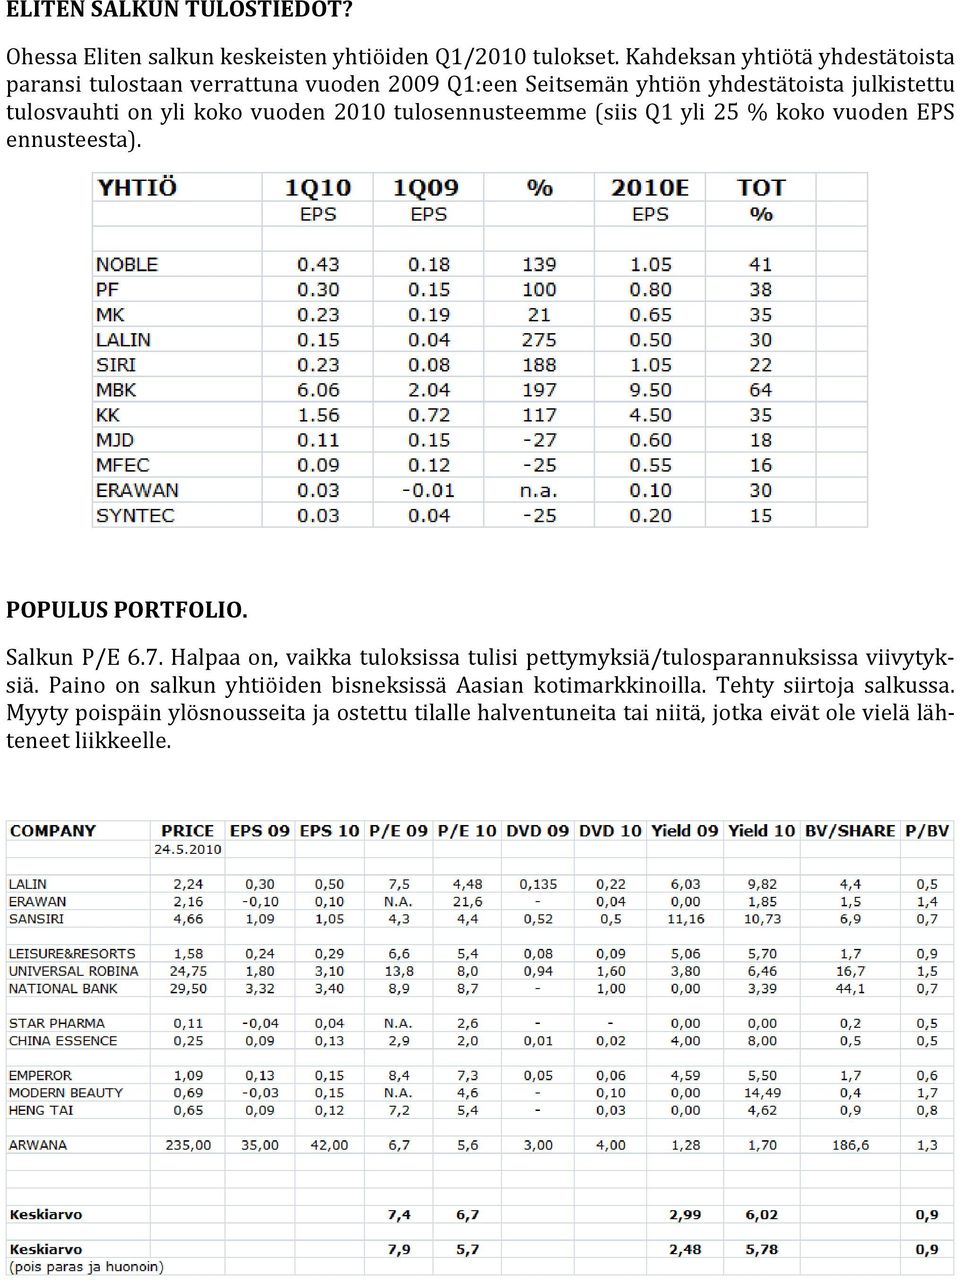 2010 tulosennusteemme (siis Q1 yli 25 % koko vuoden EPS ennusteesta). POPULUS PORTFOLIO. Salkun P/E 6.7.